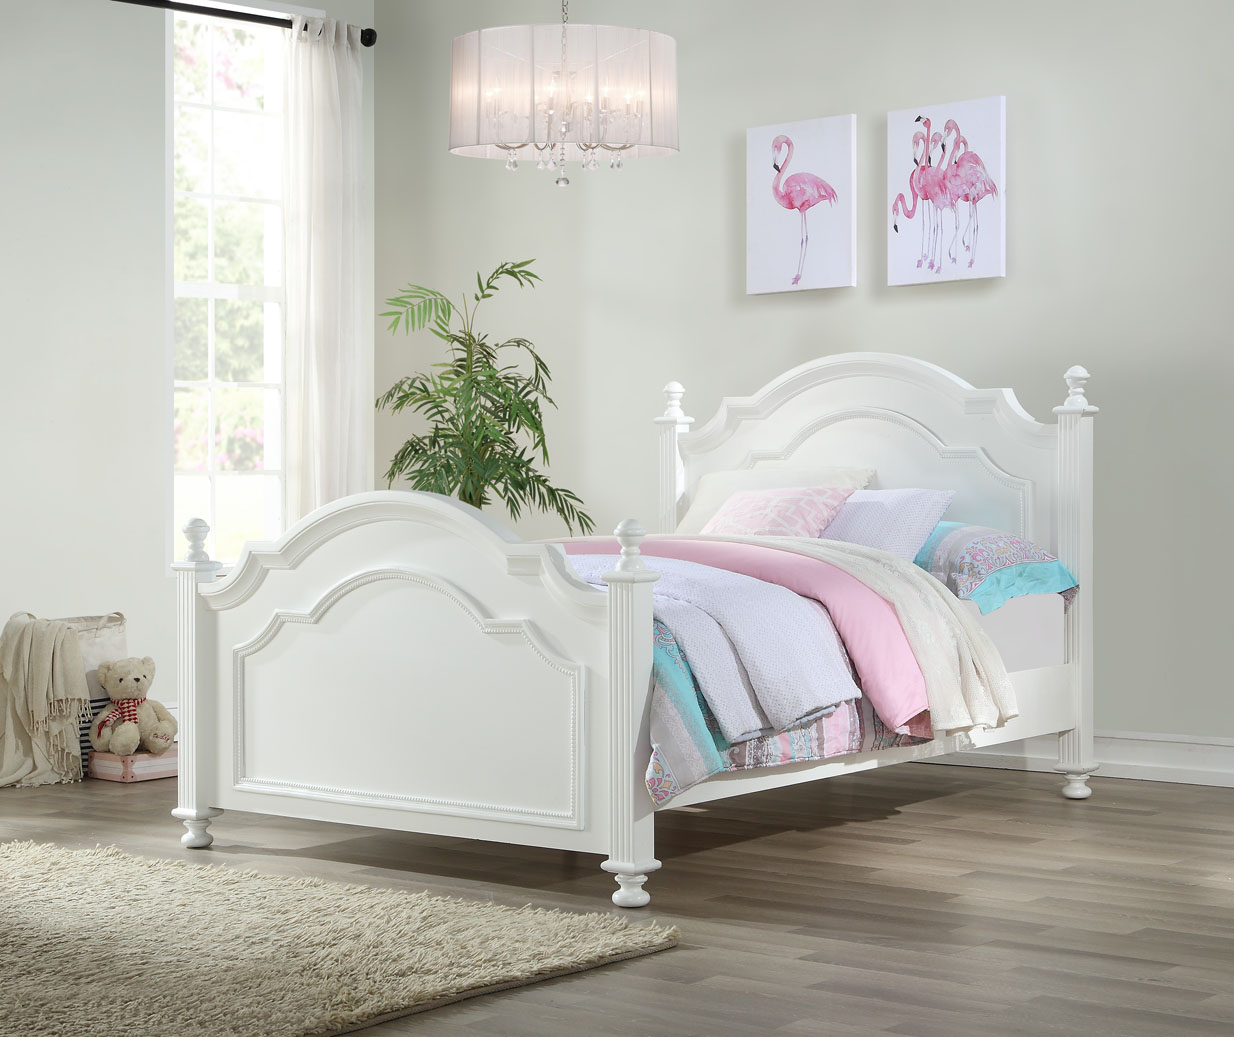 Caramia Furniture Juvenile Beds, Caramia Bunk Beds